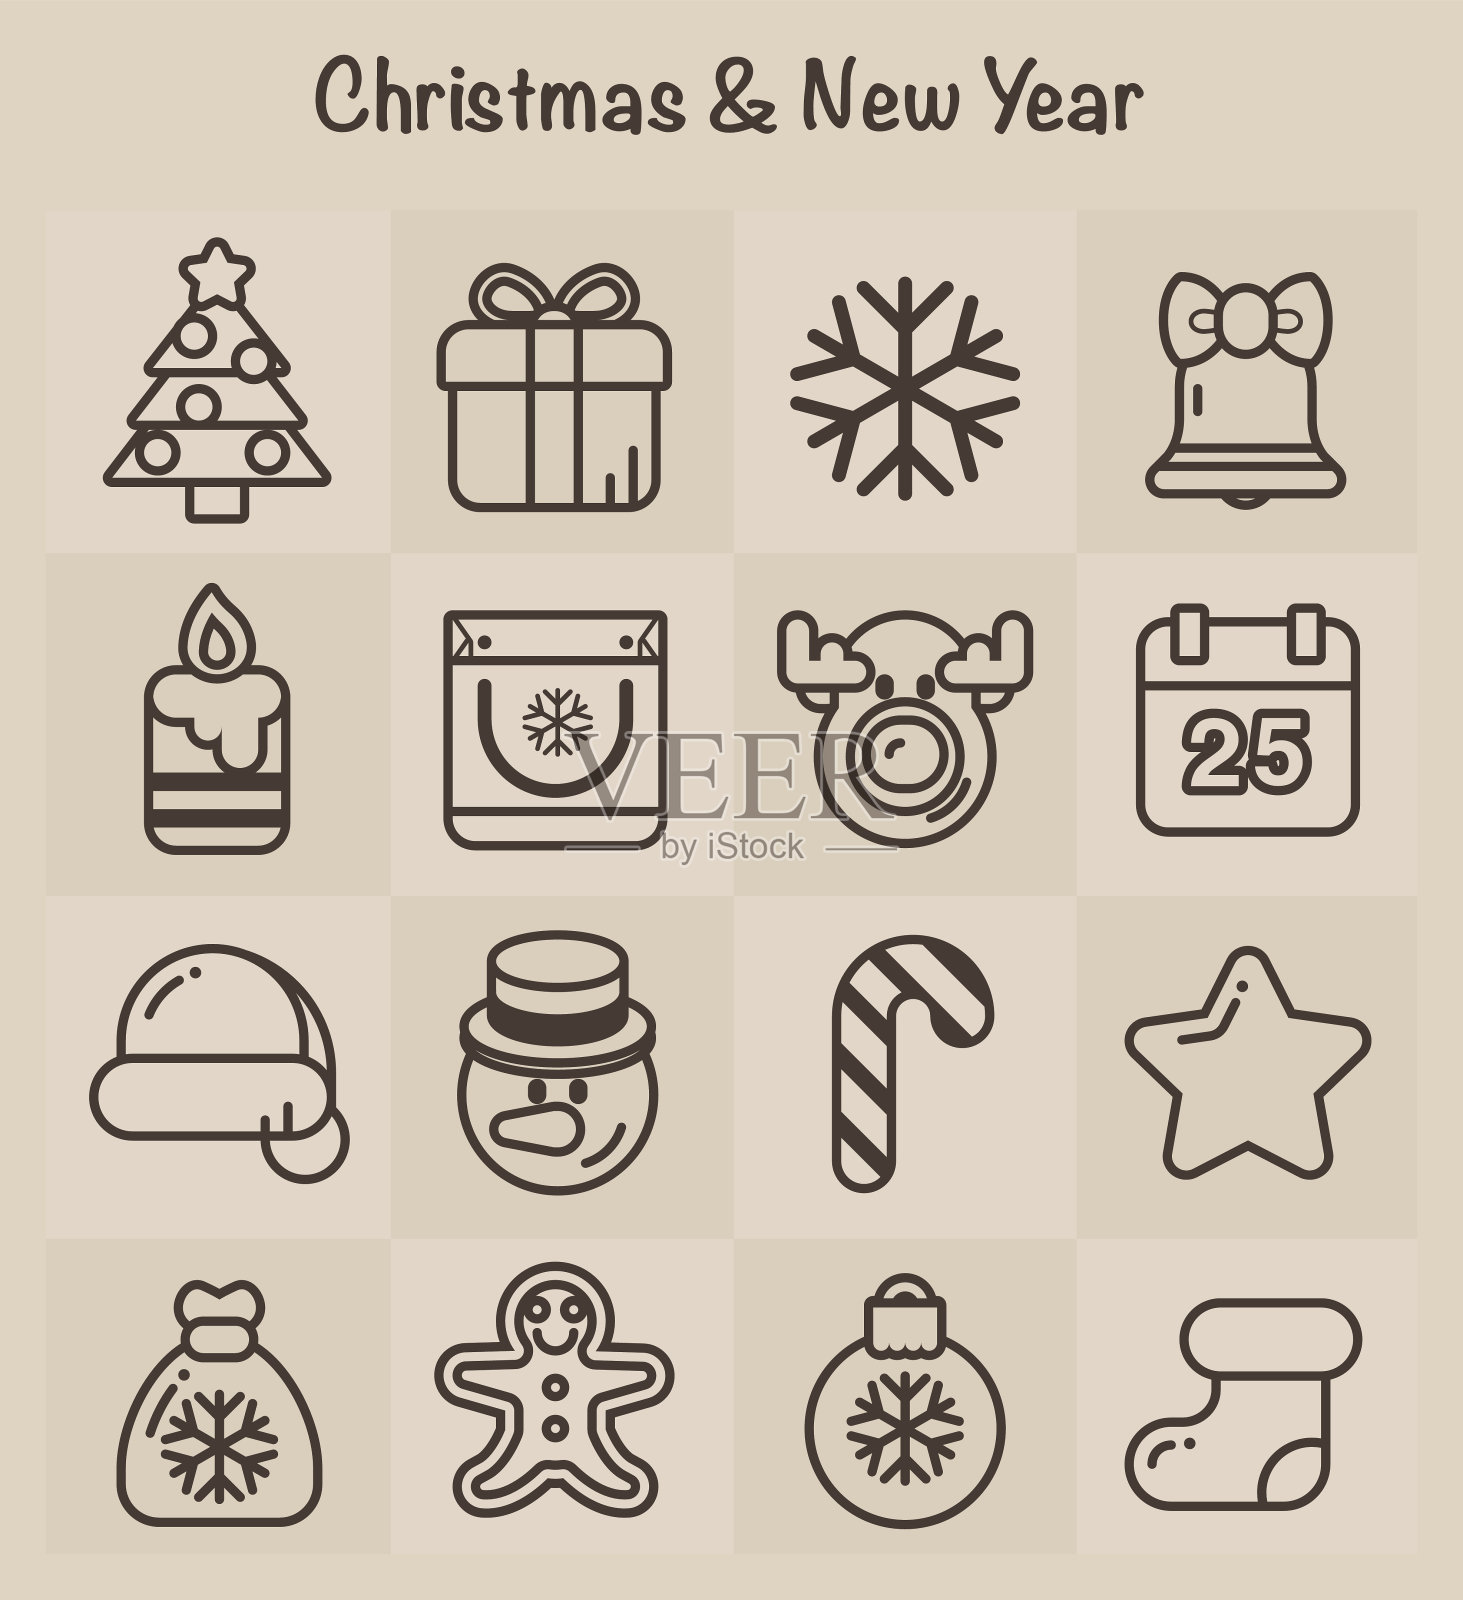 轮廓图标:圣诞节和新年图标素材